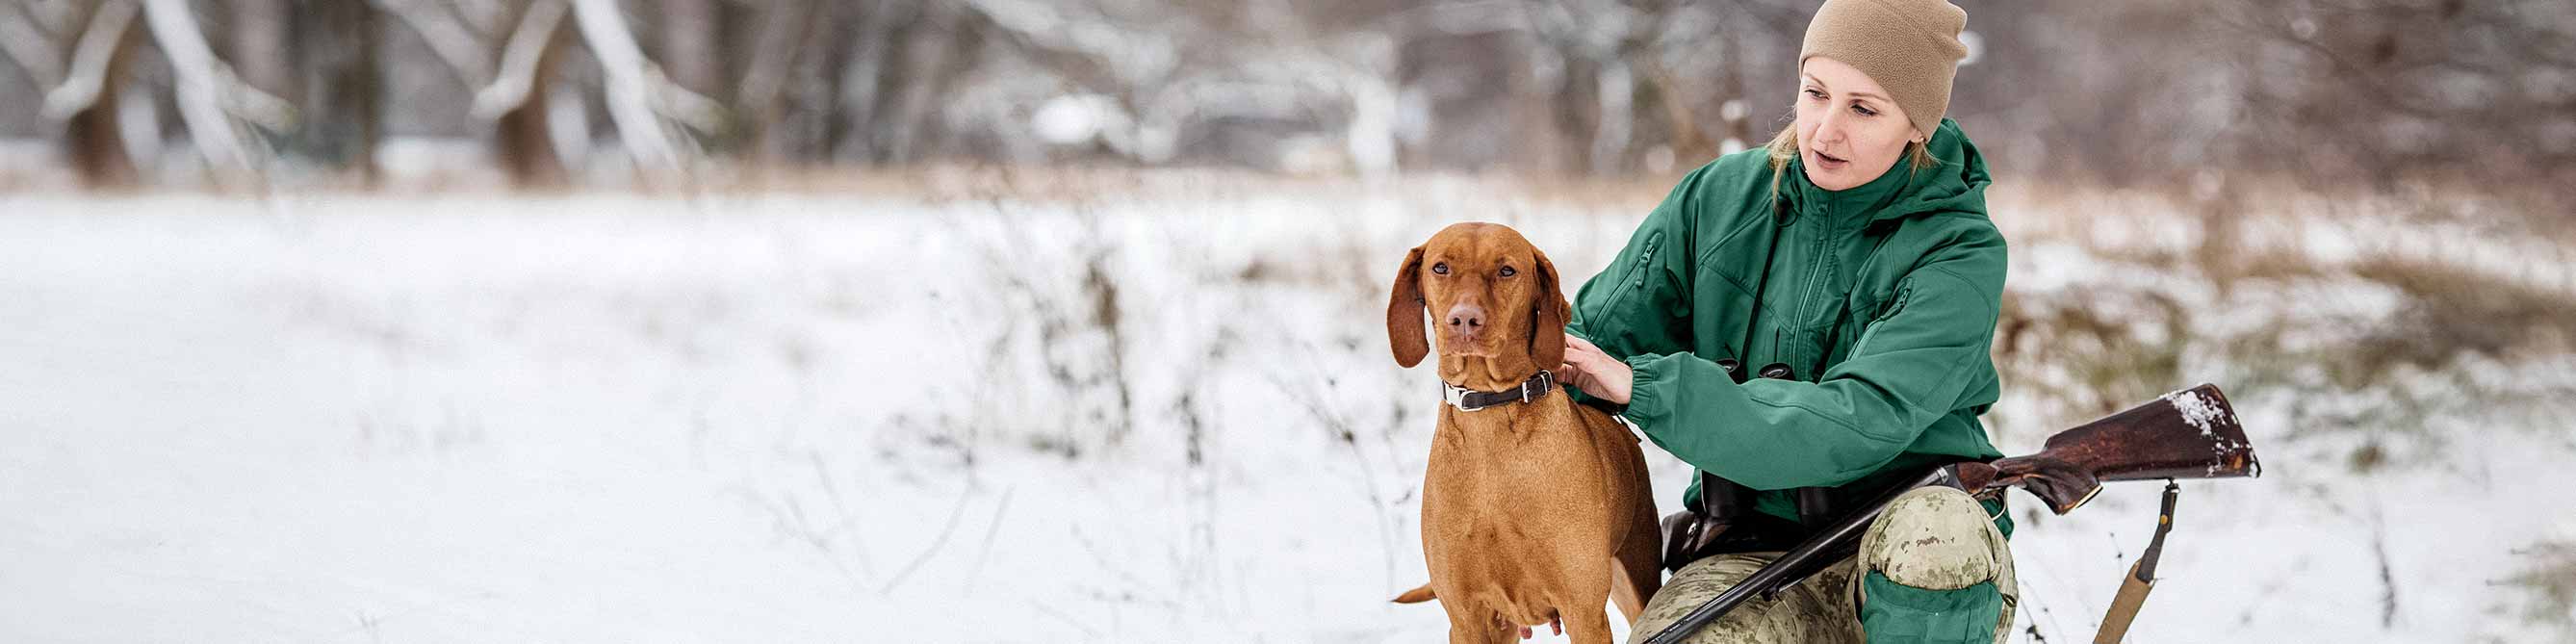 Jägerin mit Hund auf schneebedeckter Wiese